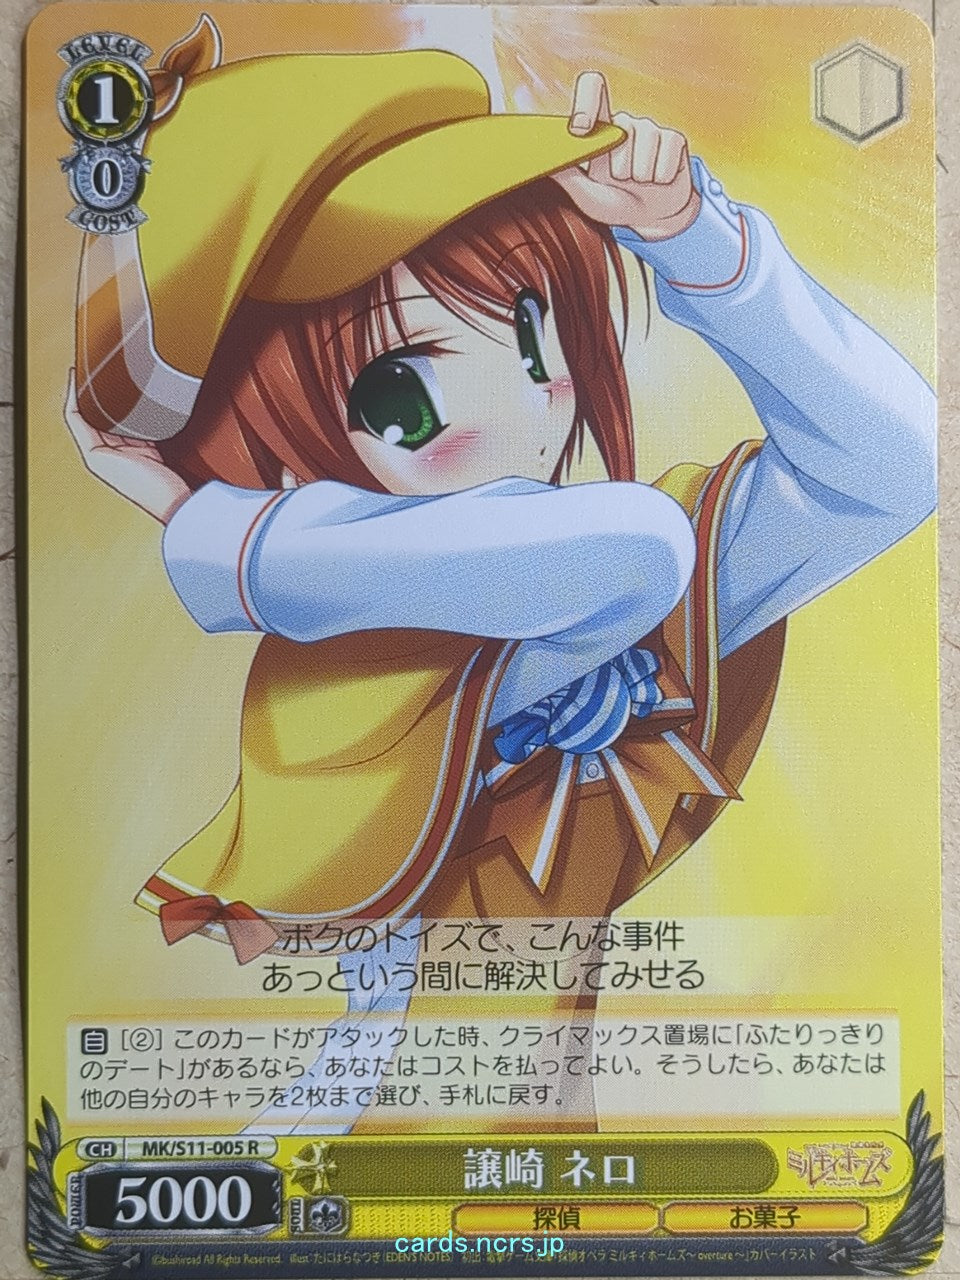 Weiss Schwarz Tantei Opera Milky Holmes -Nero Yuzurizaki-   Trading Card MK/S11-005R